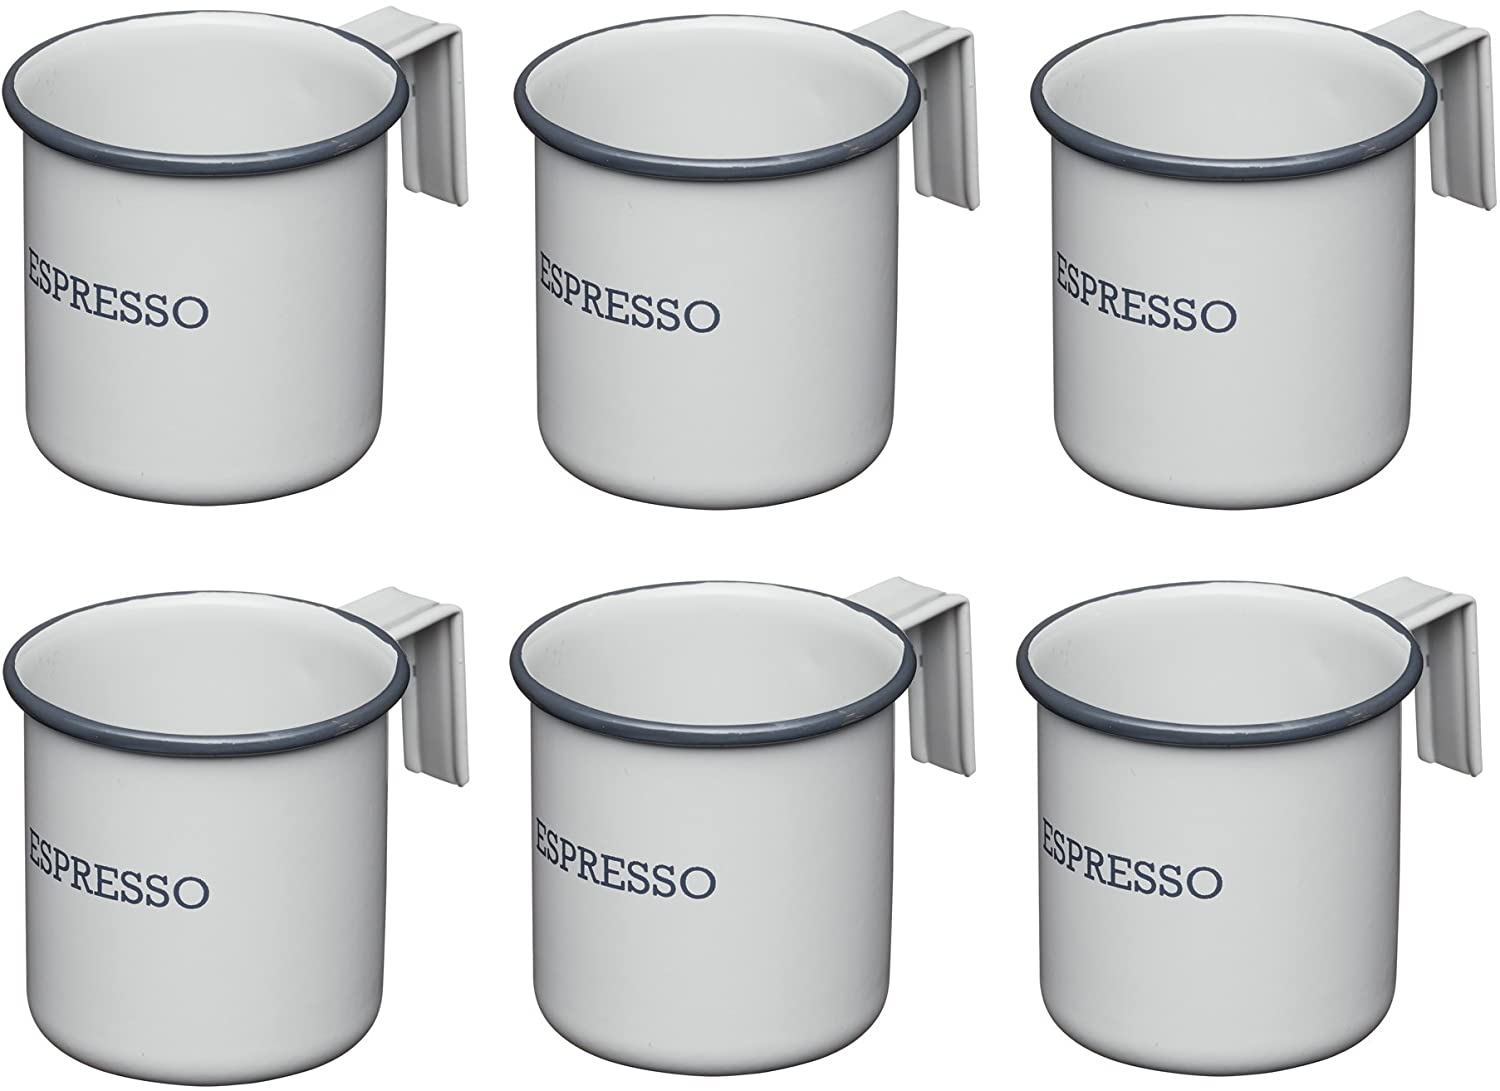 KitchenCraft Living Nostalgia Enamel Espresso Coffee Cups, 75 ml, Set of 6, Grey